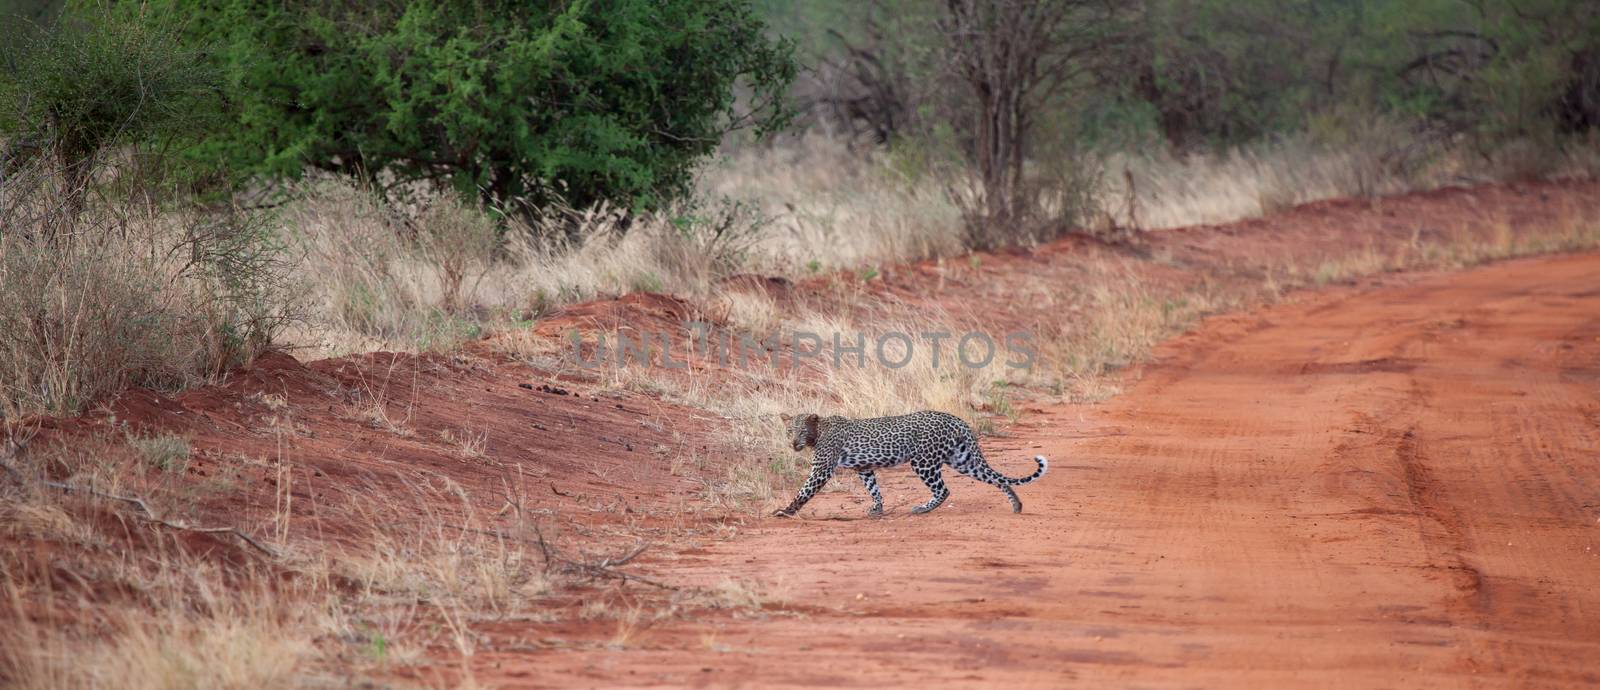 Leopard crosses the road in Kenya by 25ehaag6